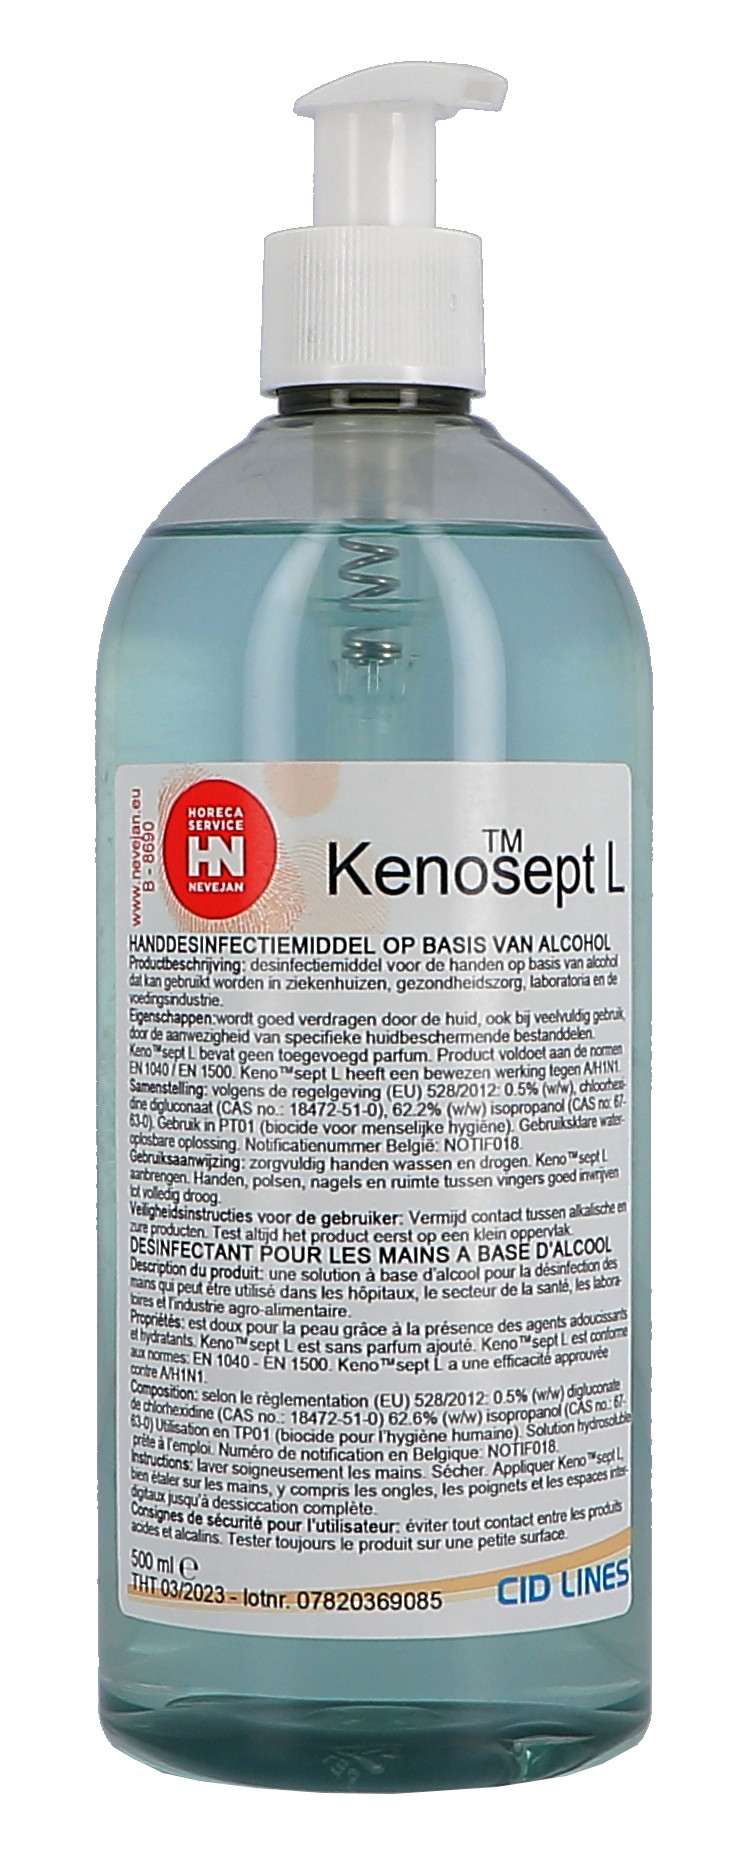 Kenosept-L 500ml désinfectant liquide pour mains Cid Lines (Hygiëneproducten)